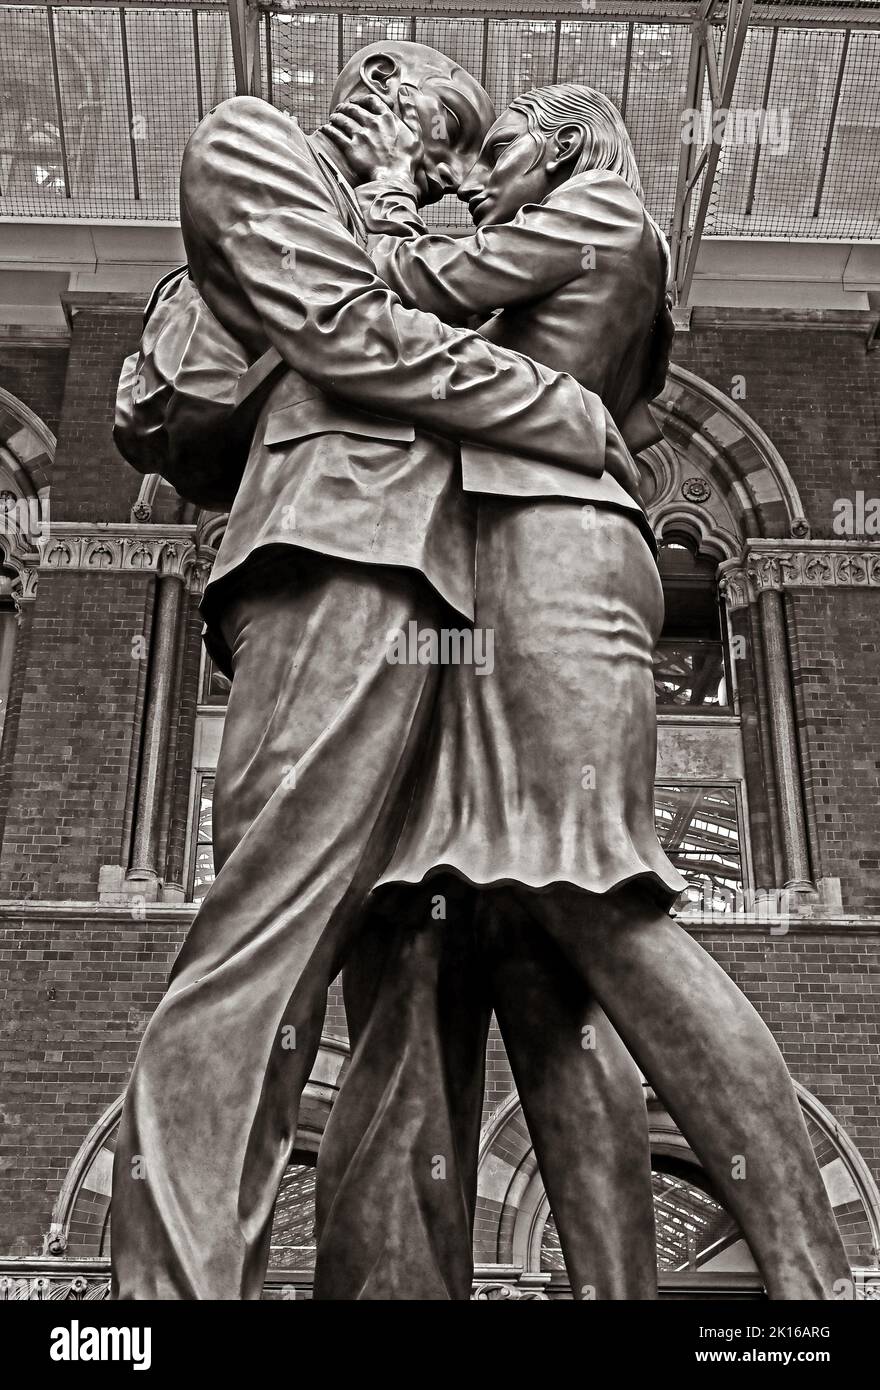 The Meeting Place, una statua dell'artista britannico Paul Day, nella Grand Terrace, stazione ferroviaria internazionale di St Pancras, Londra, Inghilterra, Regno Unito, N1C 4QP Foto Stock